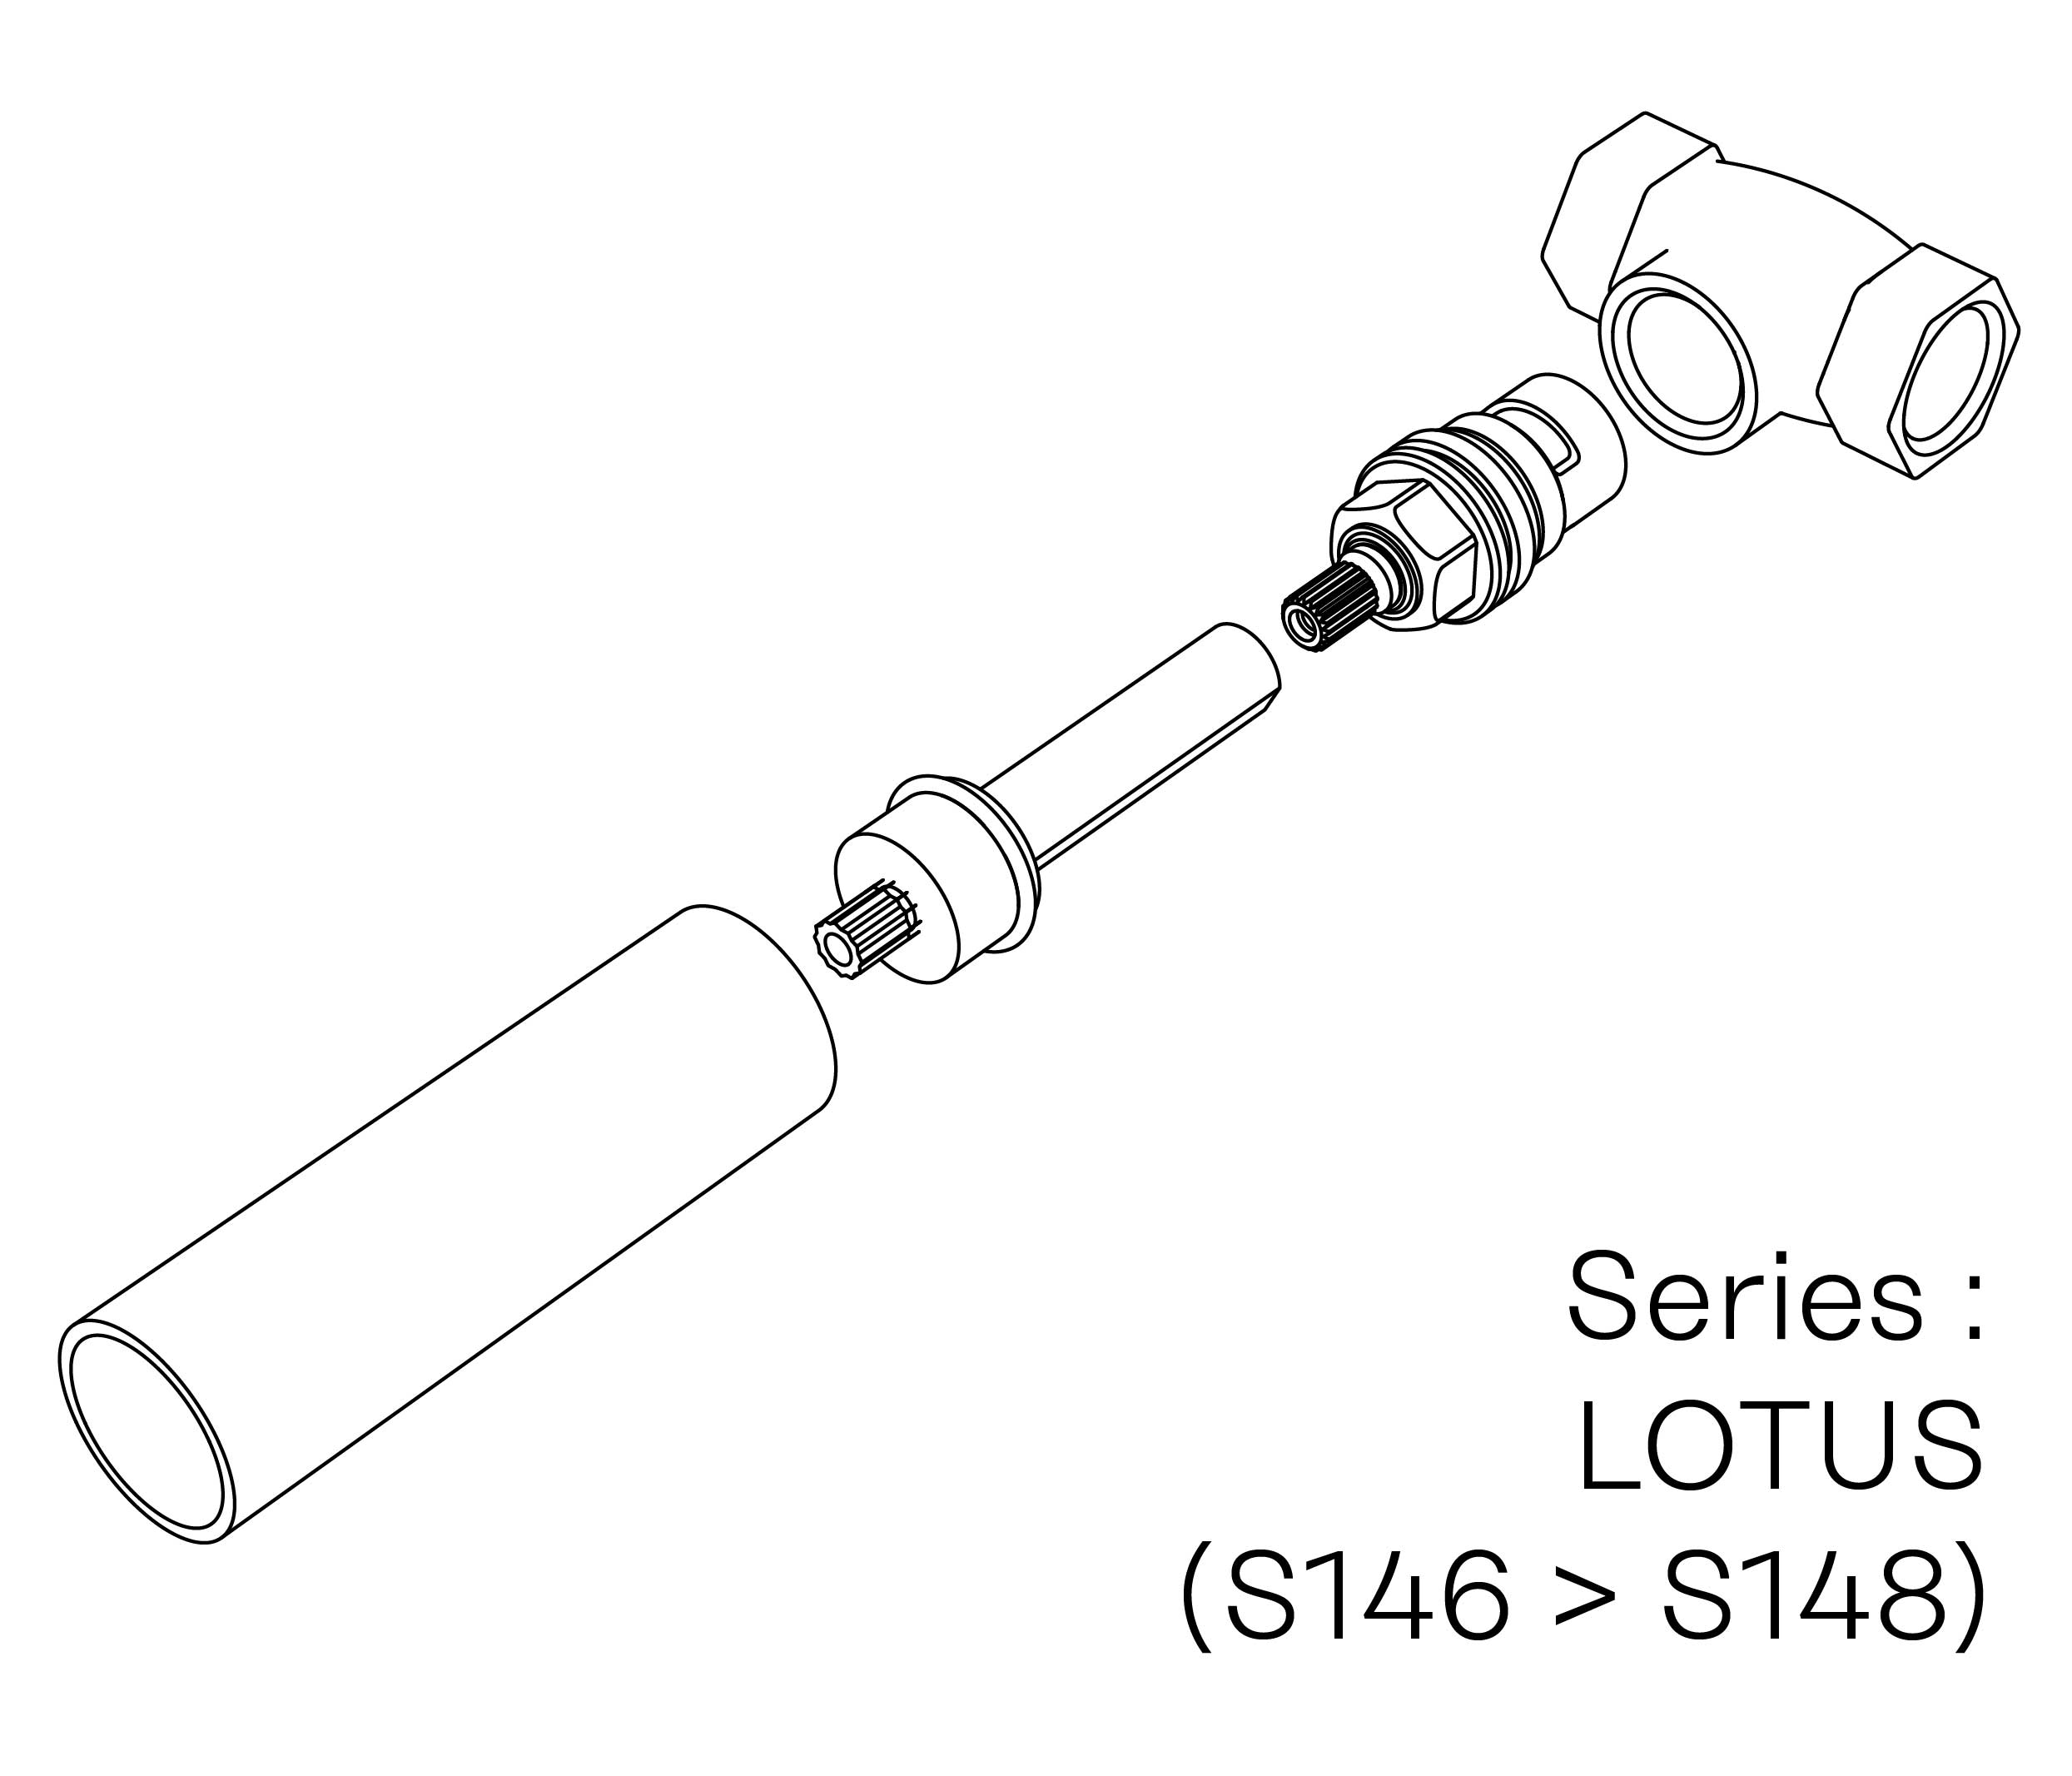 S00-27K28H Kit #7 for W-M valve 1/2″, 1/4 turn, Left